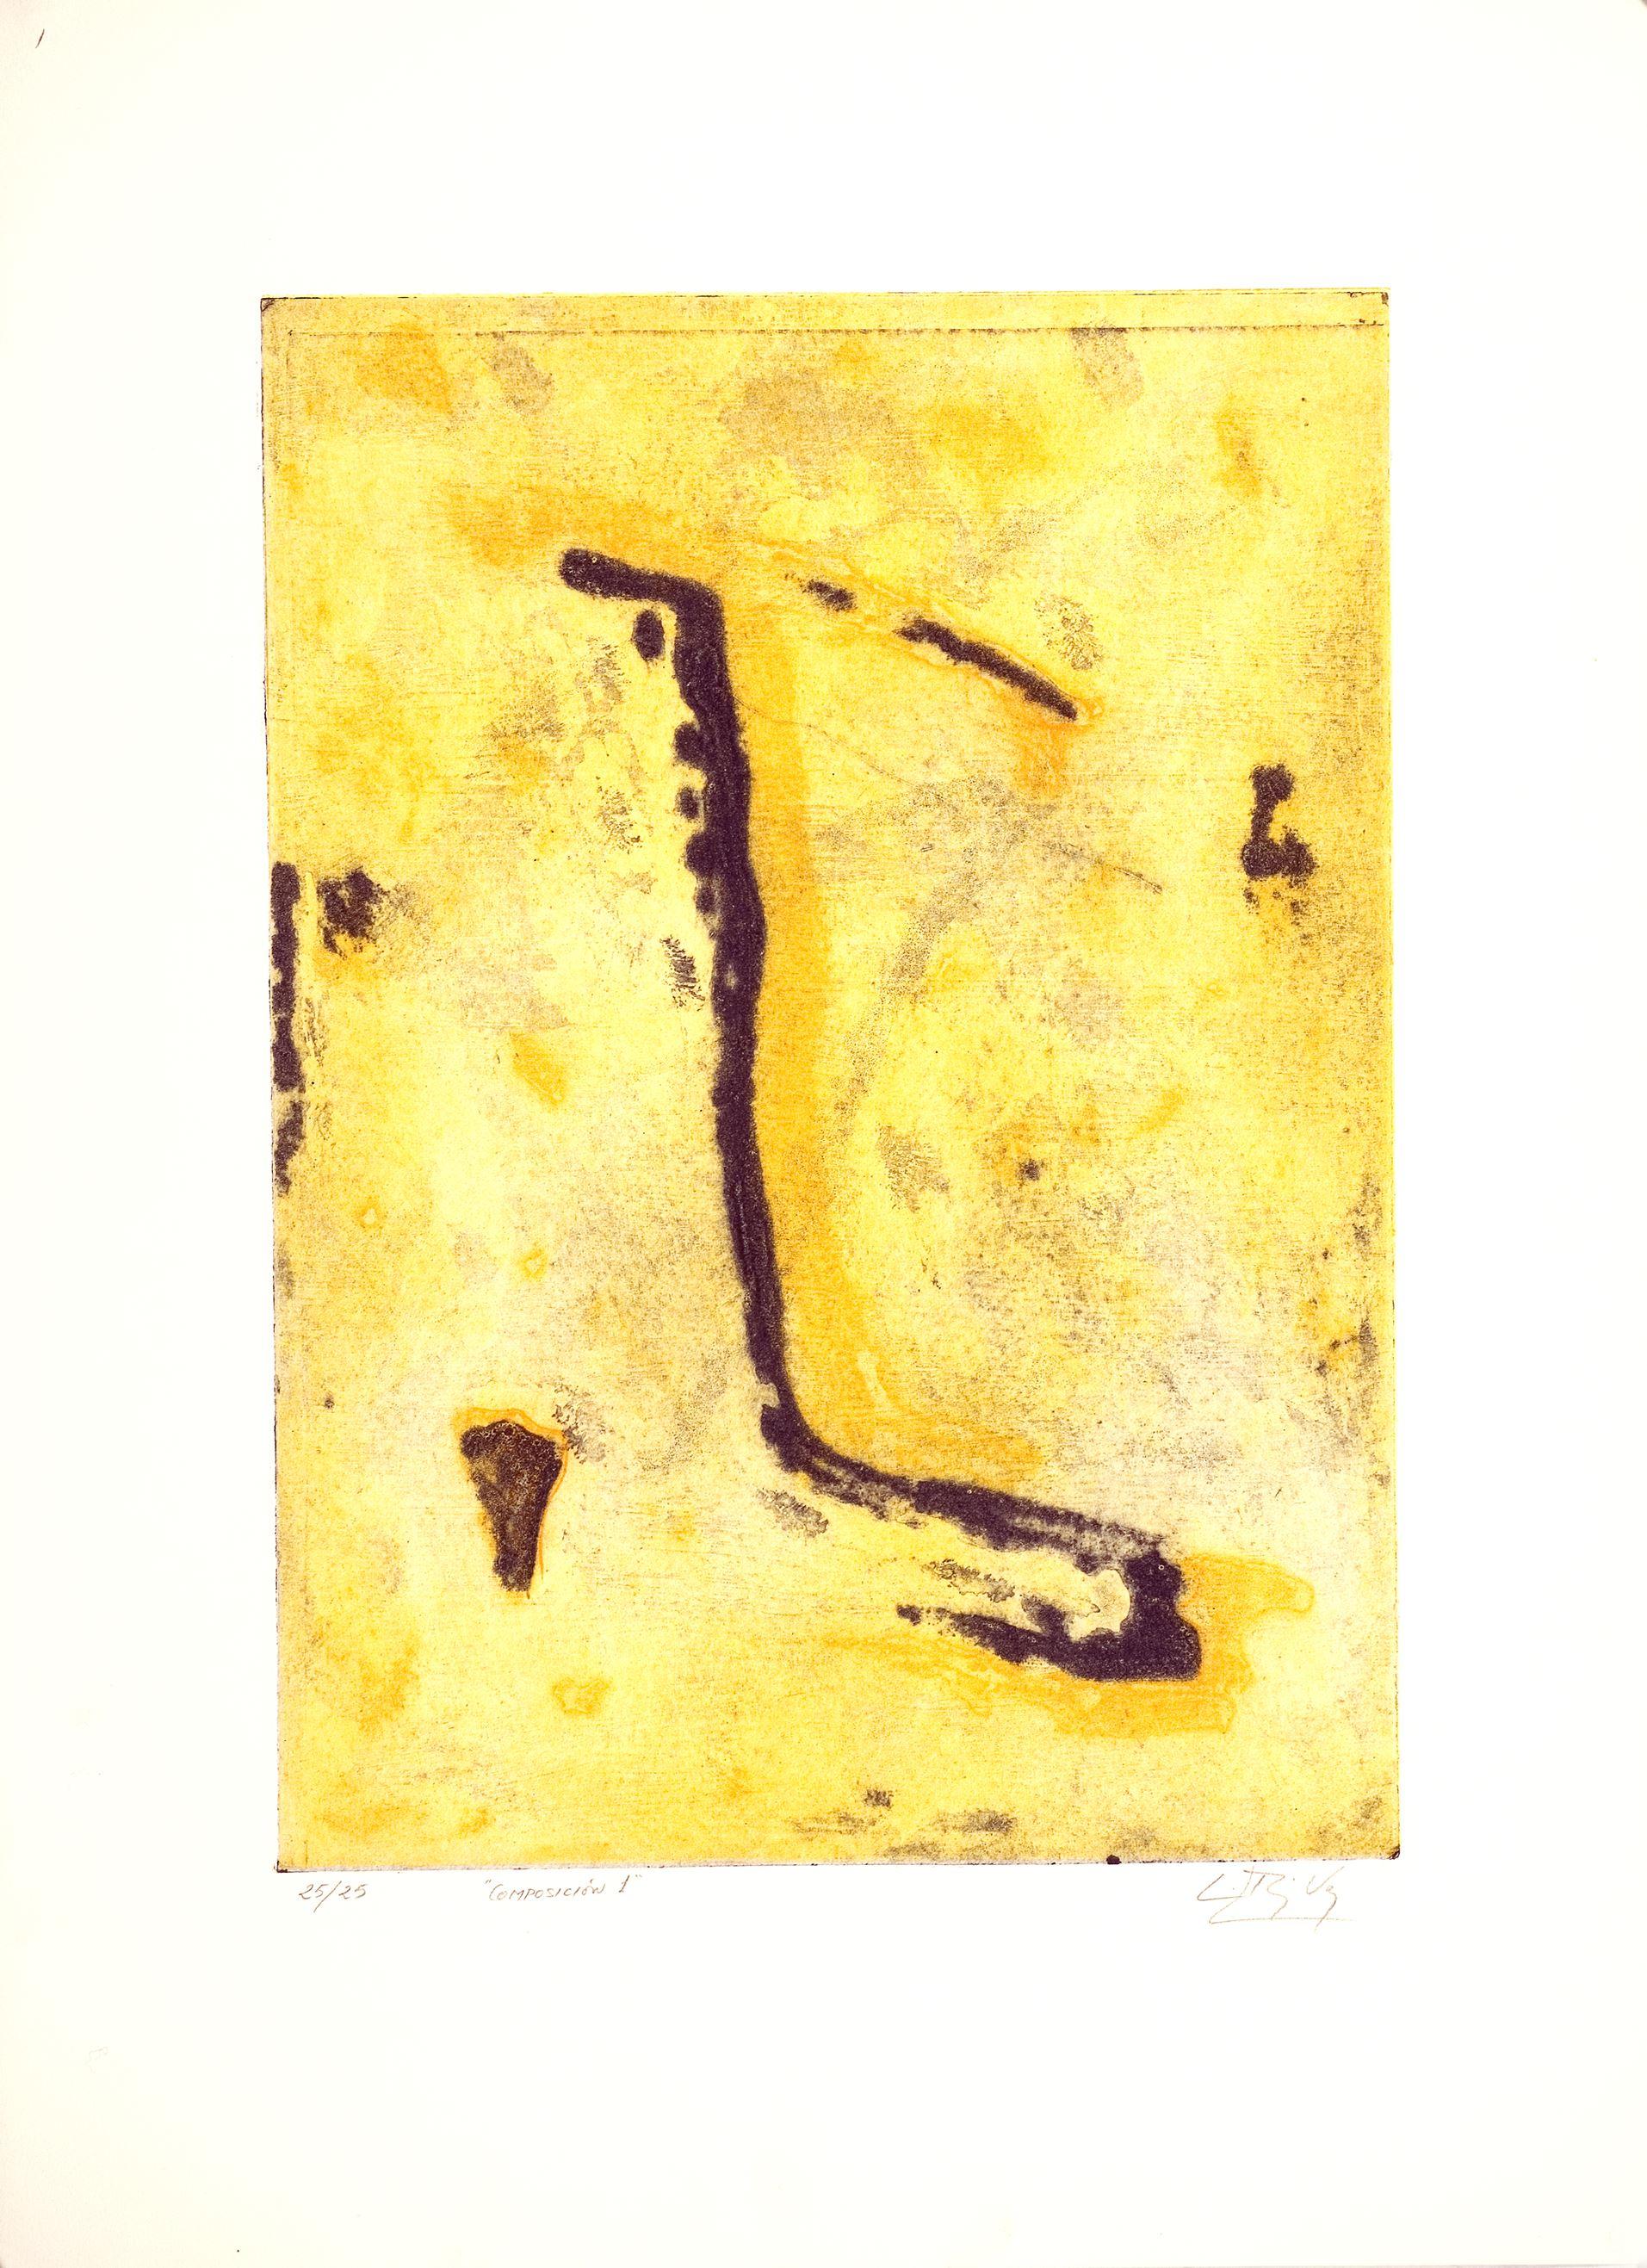 Luis Pérez Vega (Spanien, 1976)
Komposition I", 1995
Gravur auf Papier
20,5 x 14,6 Zoll (52 x 37 cm)
Auflage von 25 Stück
ID: PER1275-003-025
Vom Autor handsigniert